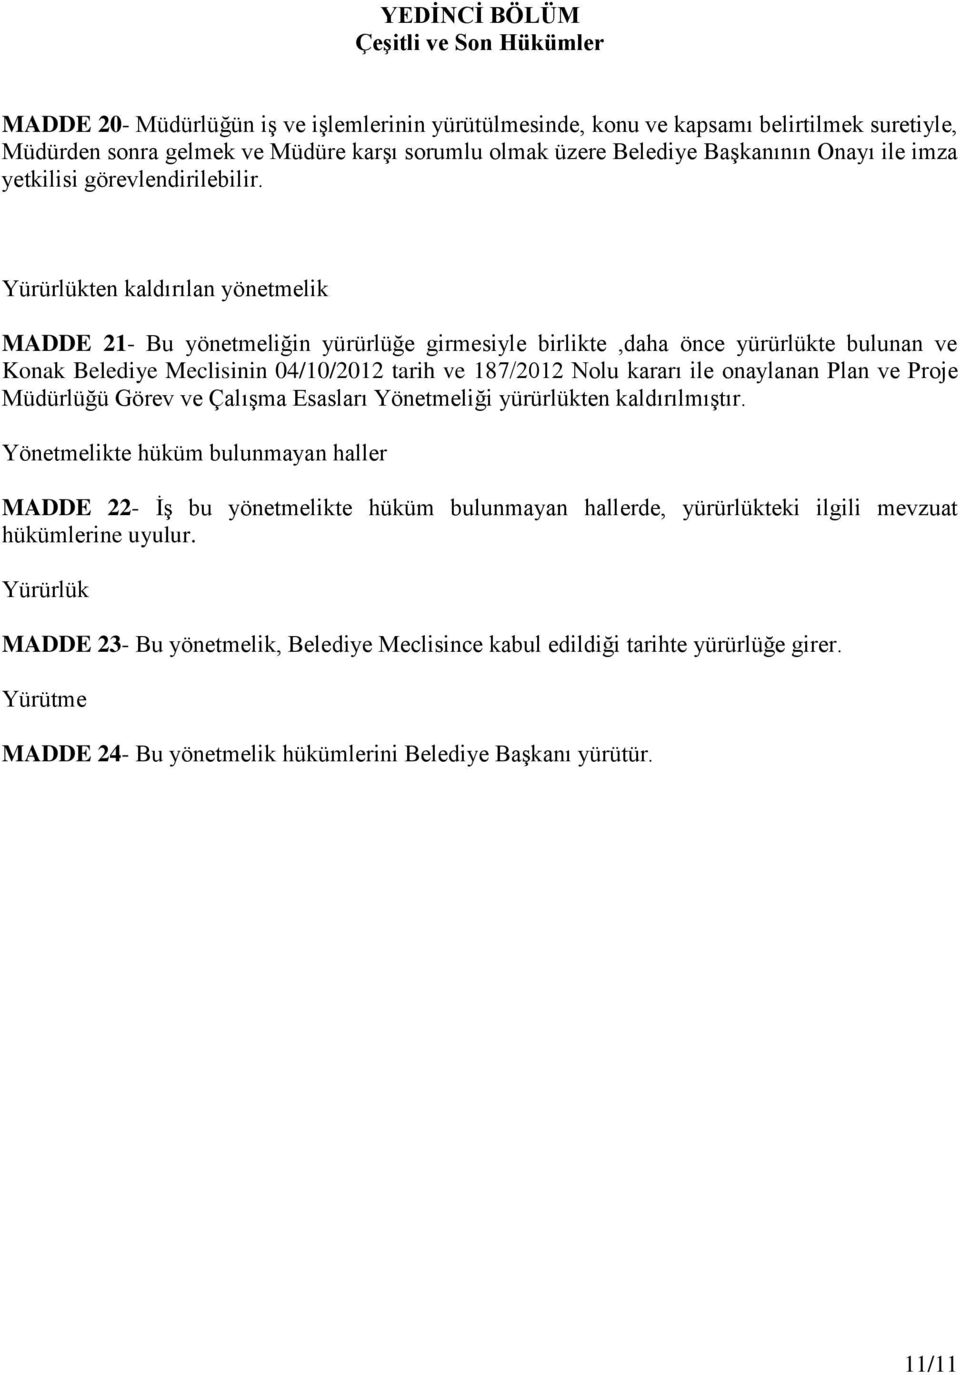 Yürürlükten kaldırılan yönetmelik MADDE 21- Bu yönetmeliğin yürürlüğe girmesiyle birlikte,daha önce yürürlükte bulunan ve Konak Belediye Meclisinin 04/10/2012 tarih ve 187/2012 Nolu kararı ile